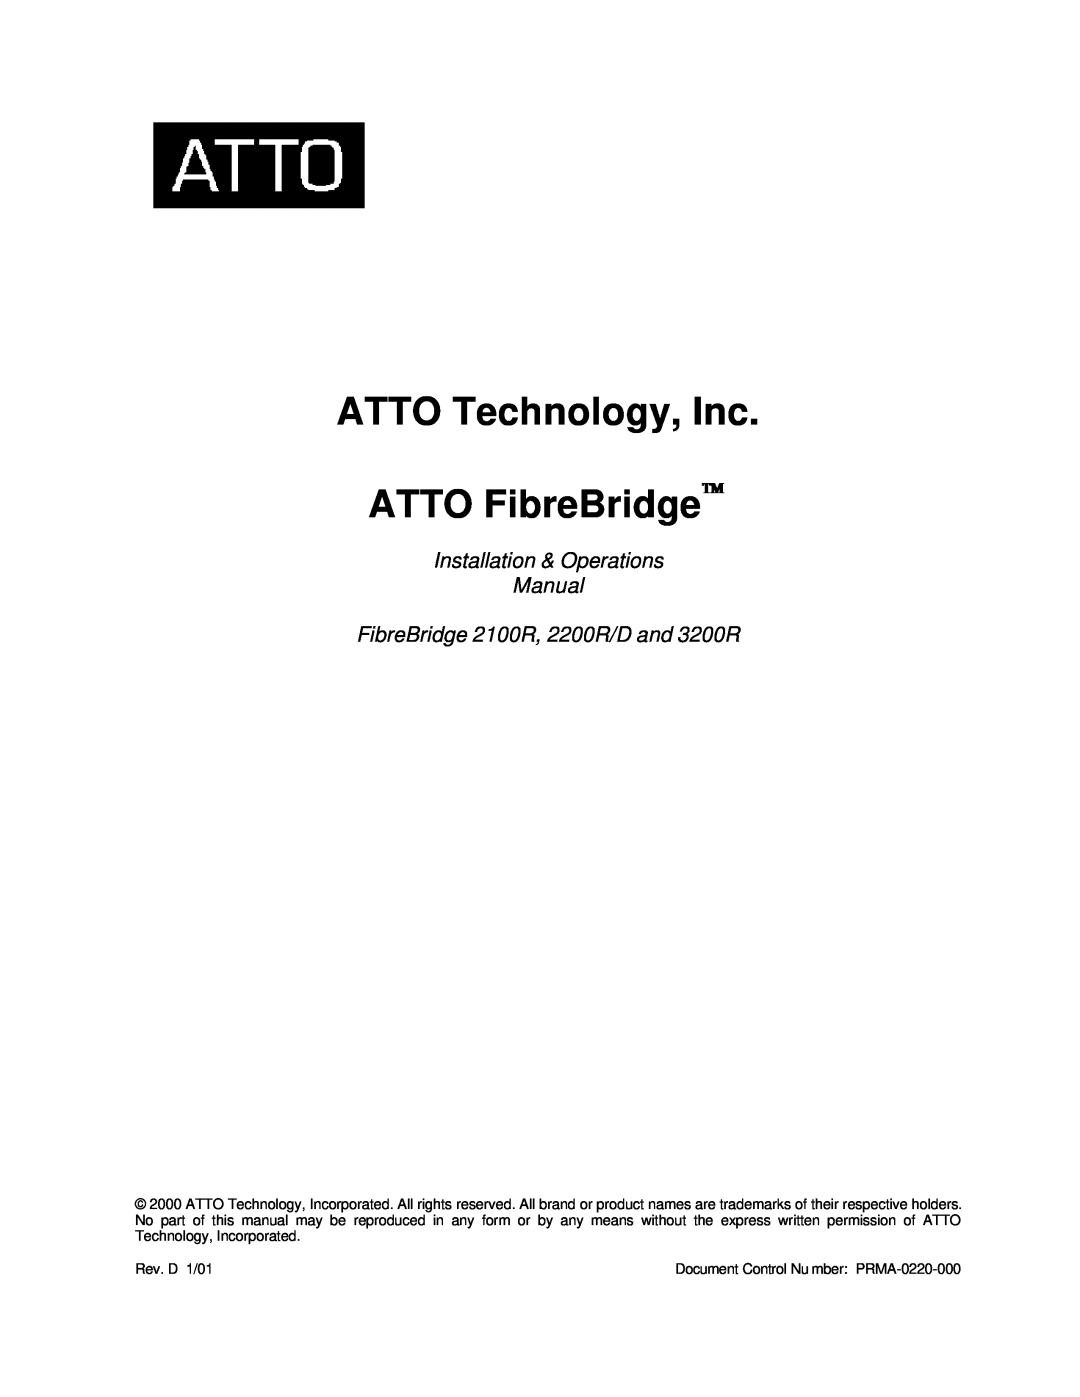 ATTO Technology 2200R/D, 3200R, 2100R manual ATTO Technology, Inc ATTO FibreBridge 